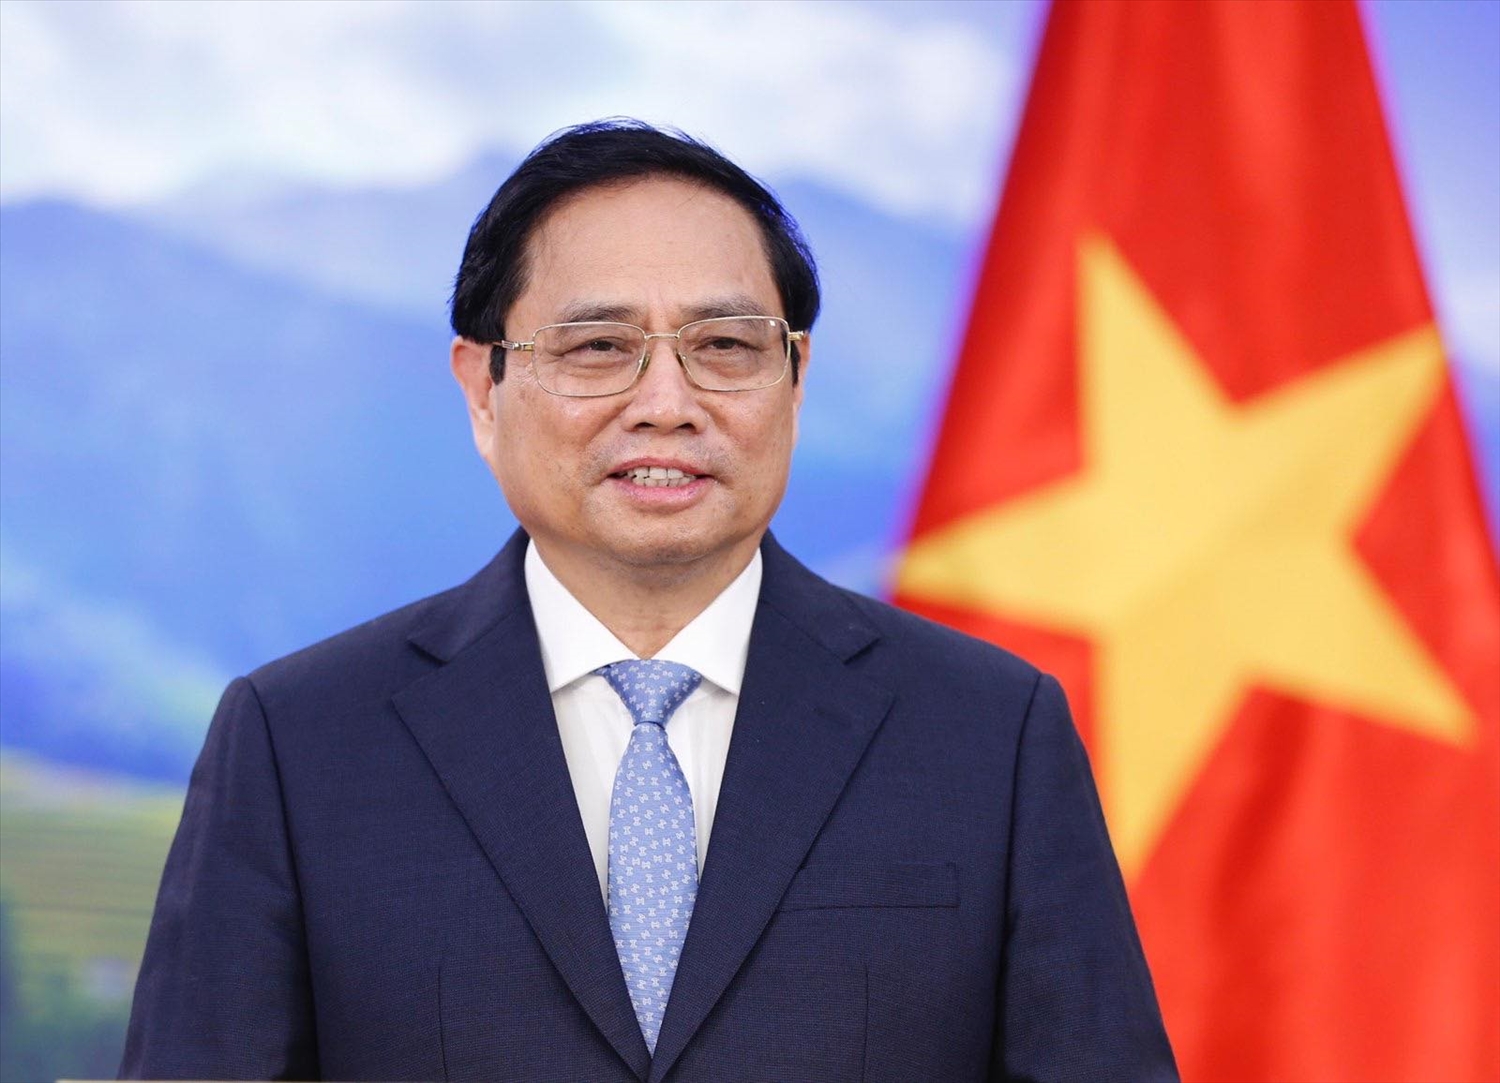 Thủ tướng Phạm Minh Chính sẽ thăm chính thức Campuchia từ ngày 8 - 9/11 và dự Hội nghị Cấp cao ASEAN lần thứ 40 - 41 và các hội nghị liên quan từ 10 - 13/11